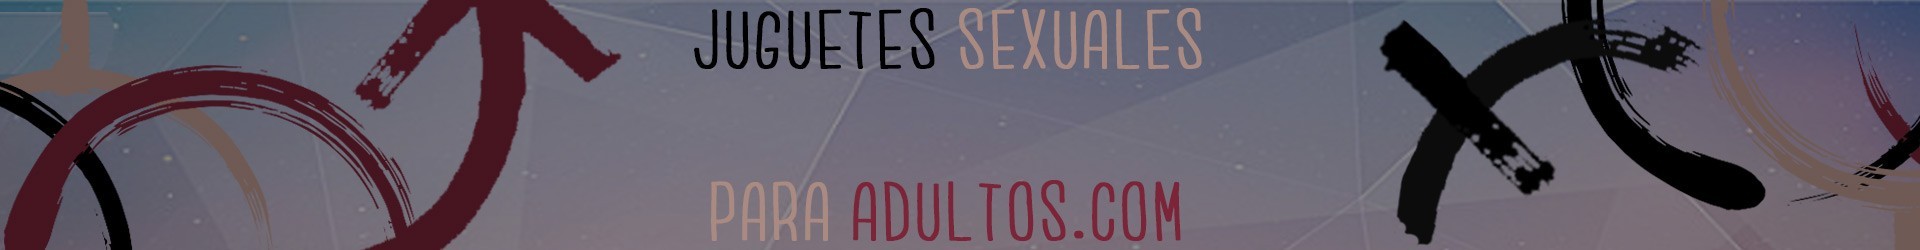 BDSM / Accesorios - Juguetes Sexuales Sex Shop